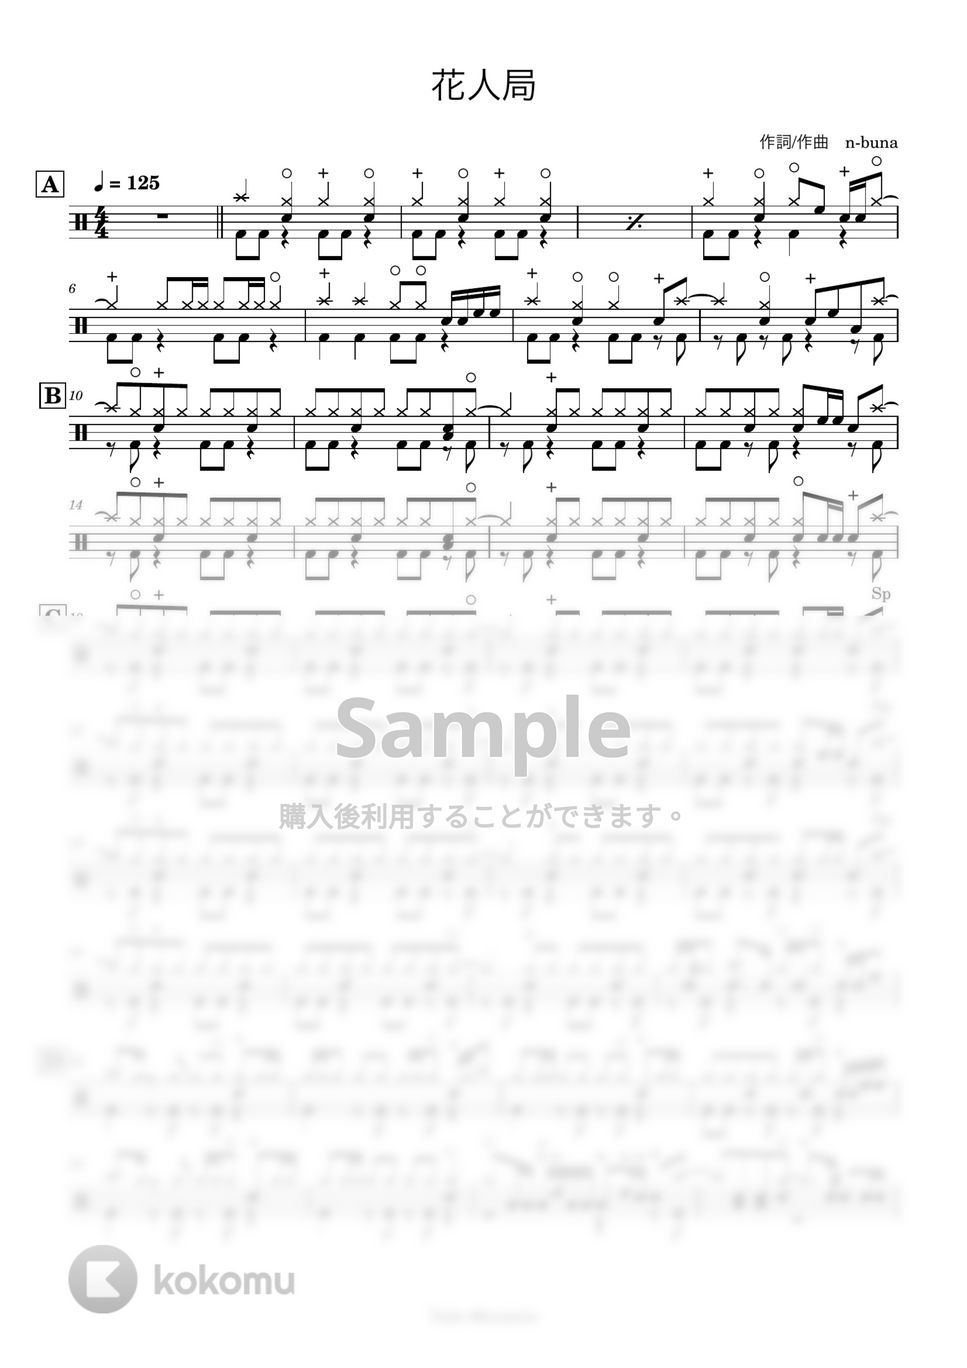 ヨルシカ - 【ドラム譜】花人局【完コピ】 by Taiki Mizumoto